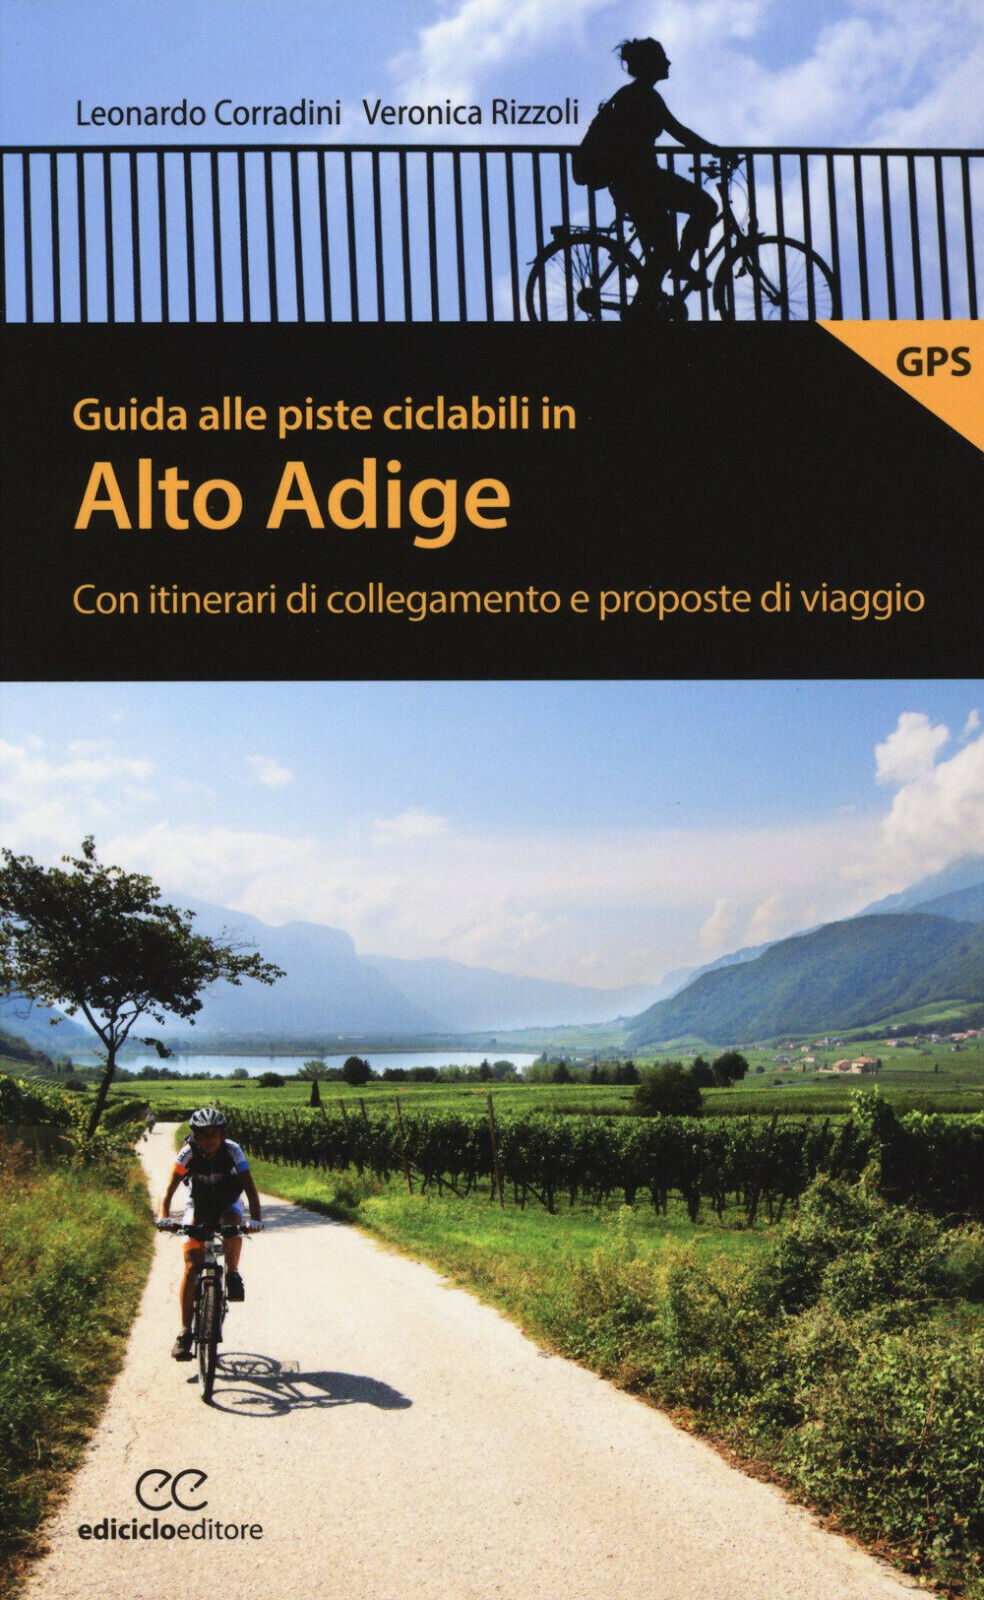 Guida alle piste ciclabili in Alto Adige - Corradini, Rizzoli - Ediciclo, 2018